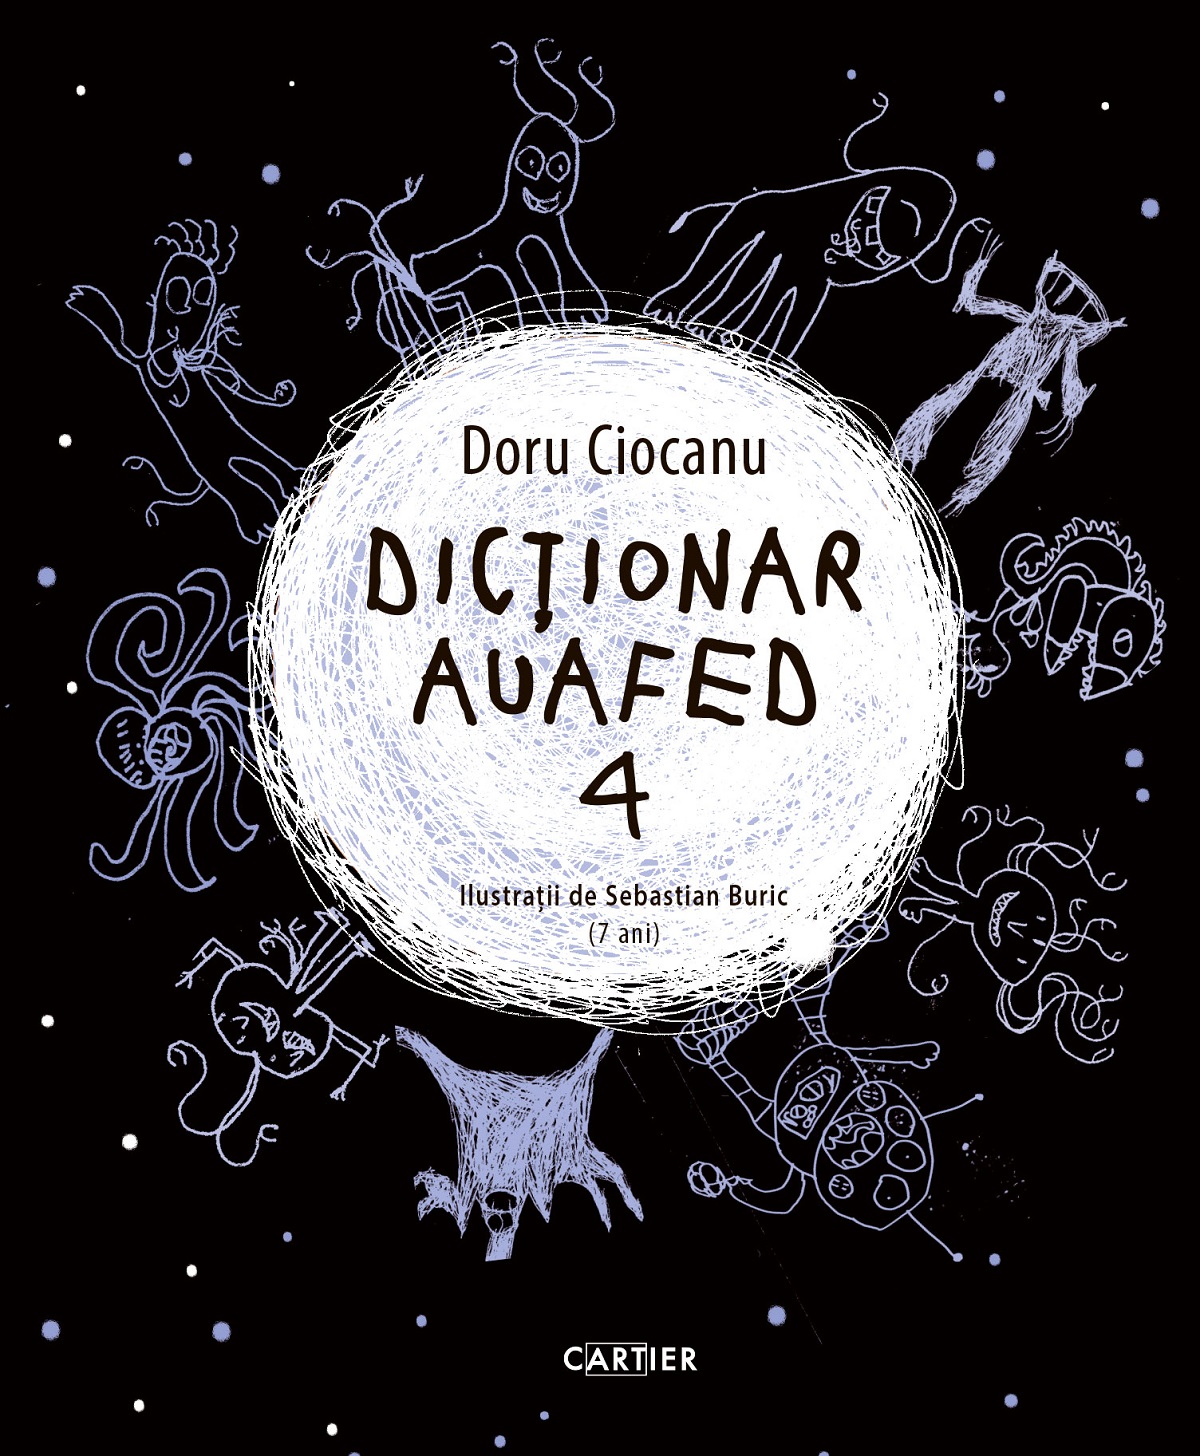 Dictionar auafed 4 - Doru Ciocanu